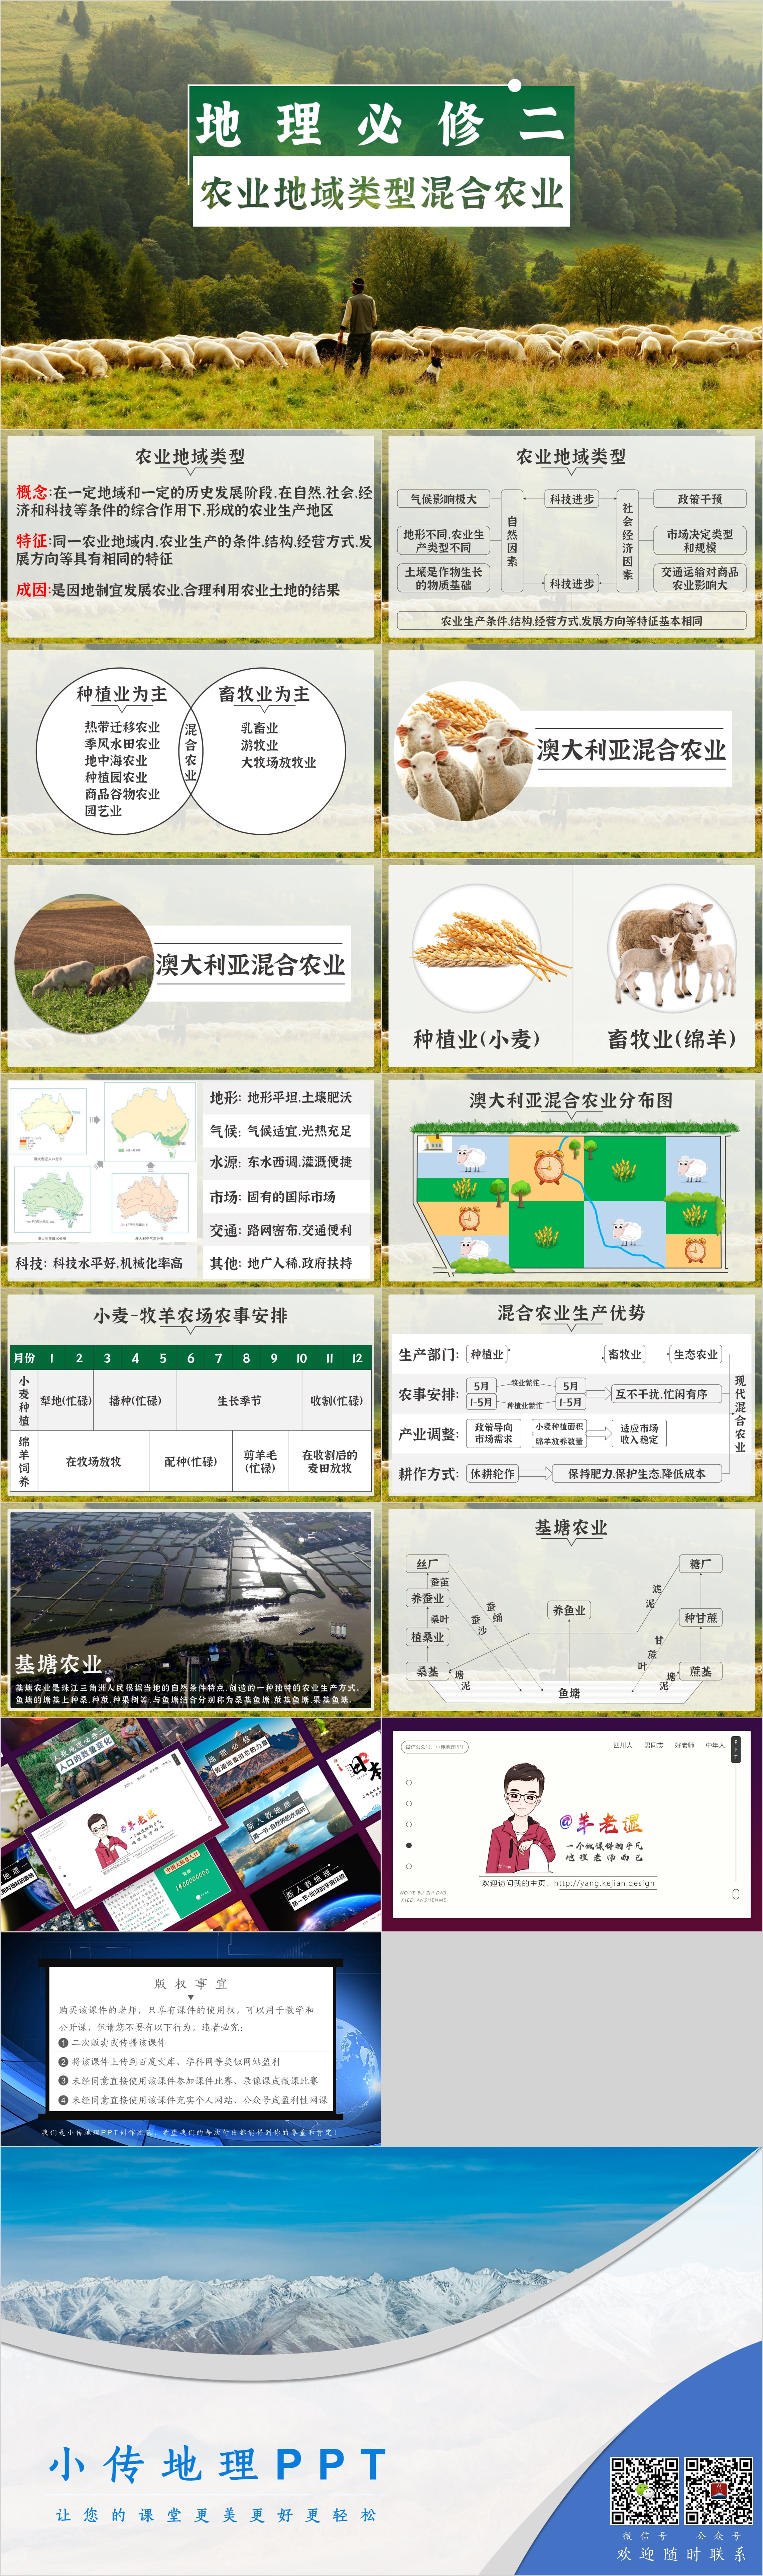 农业地域类型-混合农业 (1).jpg